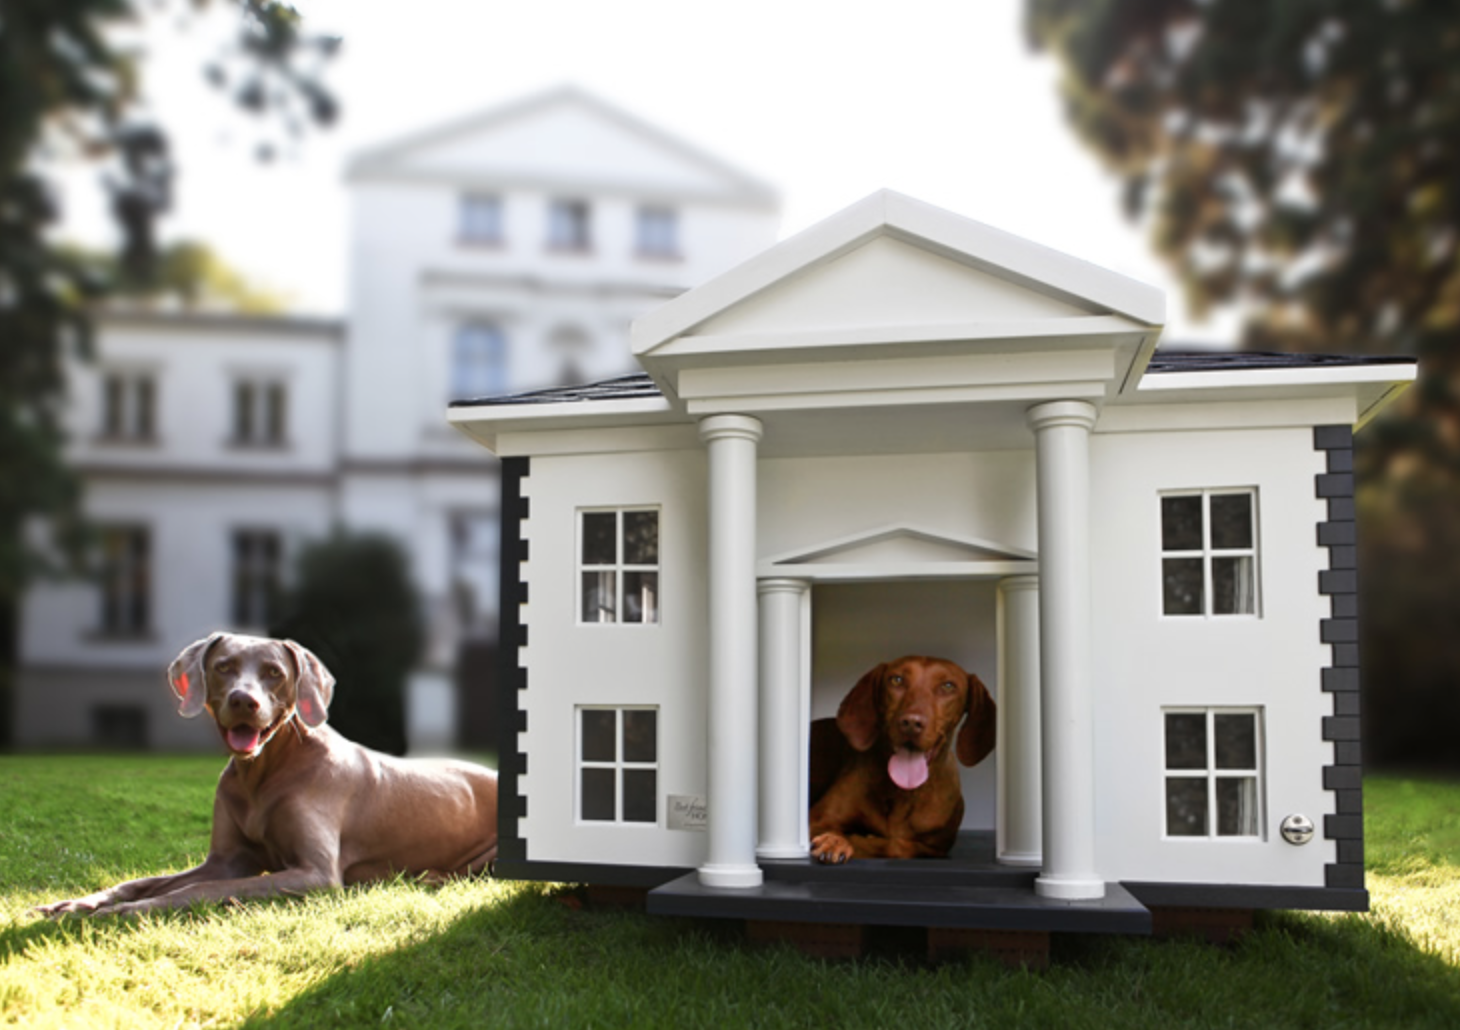 Дог хаус демо dogs house net. Домик для собаки. Собака с конурой. Красивые будки для собак. Уютный домик для собаки.